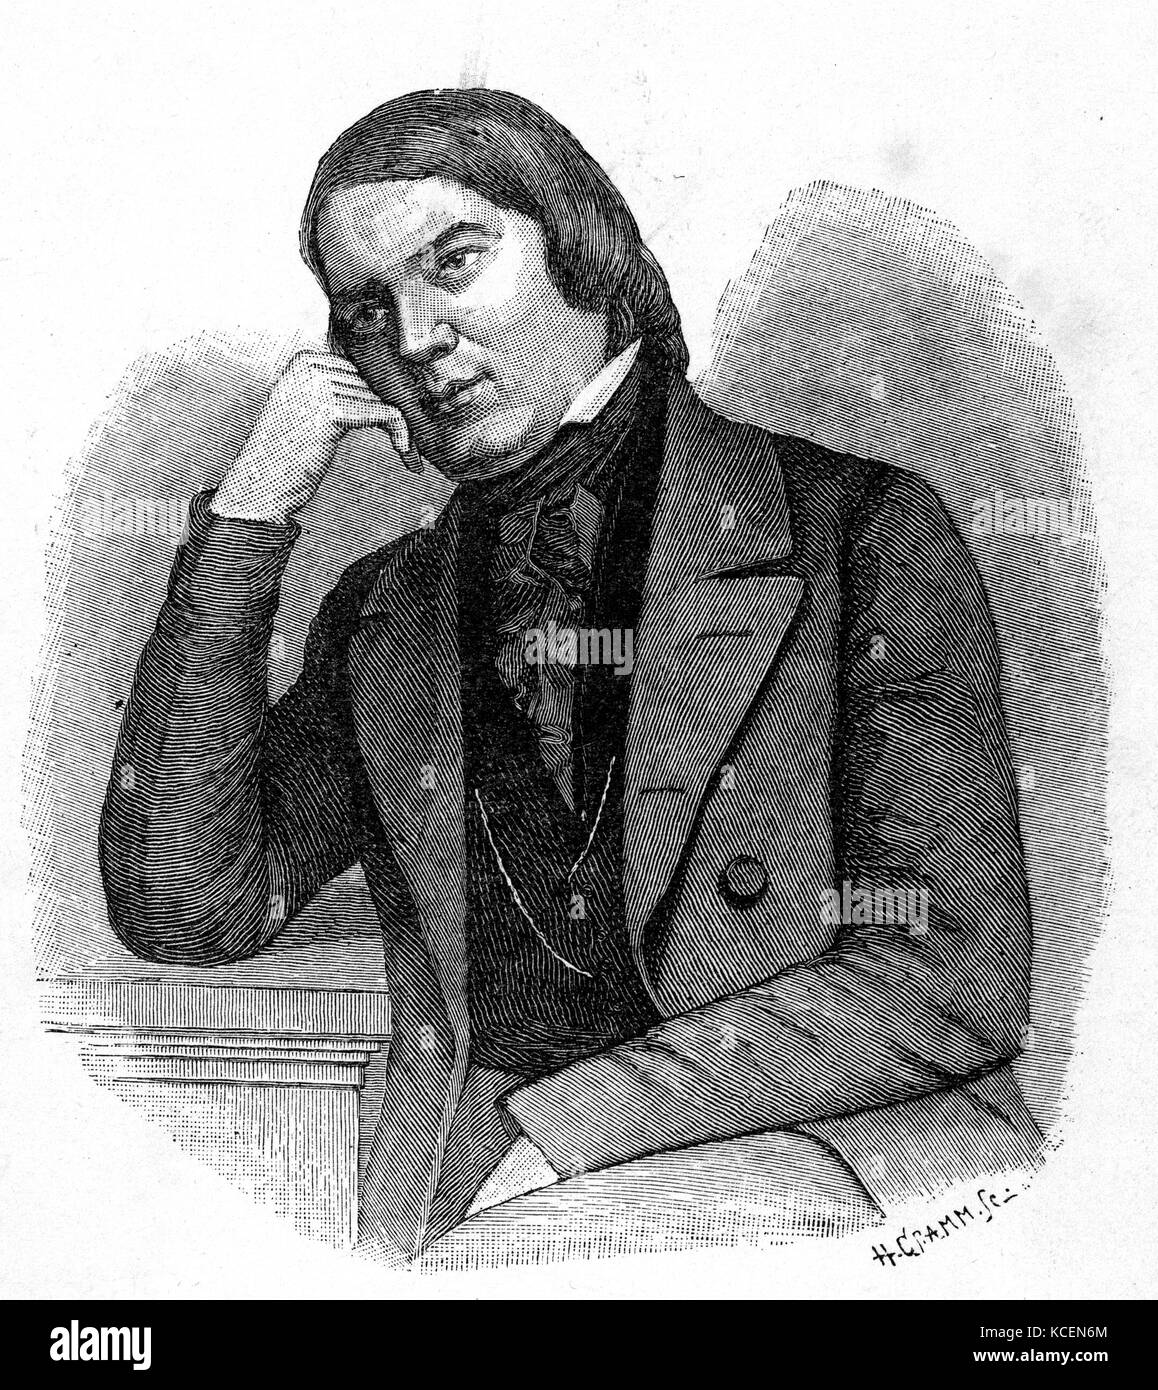 Robert Schumann (1810-1856), deutscher Komponist und Musikkritiker. Er gilt als einer der größten Komponisten der Romantik betrachtet. Stockfoto